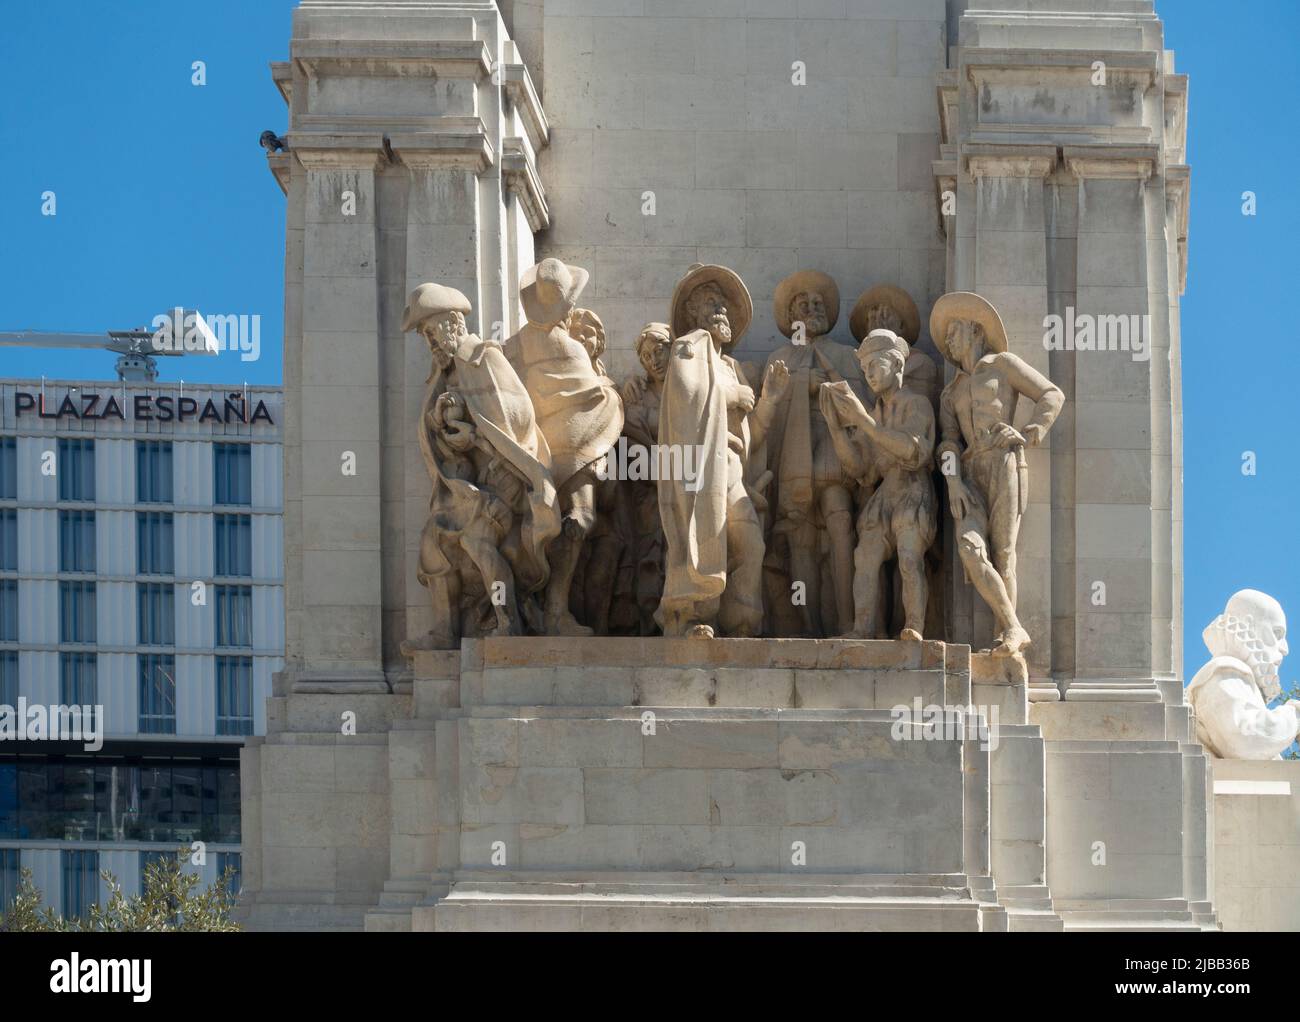 Grupo de estatuas que representan a Rinconete y Cortadillo, una historia corta de Cervantes. Este grupo fue creado por Federico Coullaut-Valera Mendigutia. Foto de stock